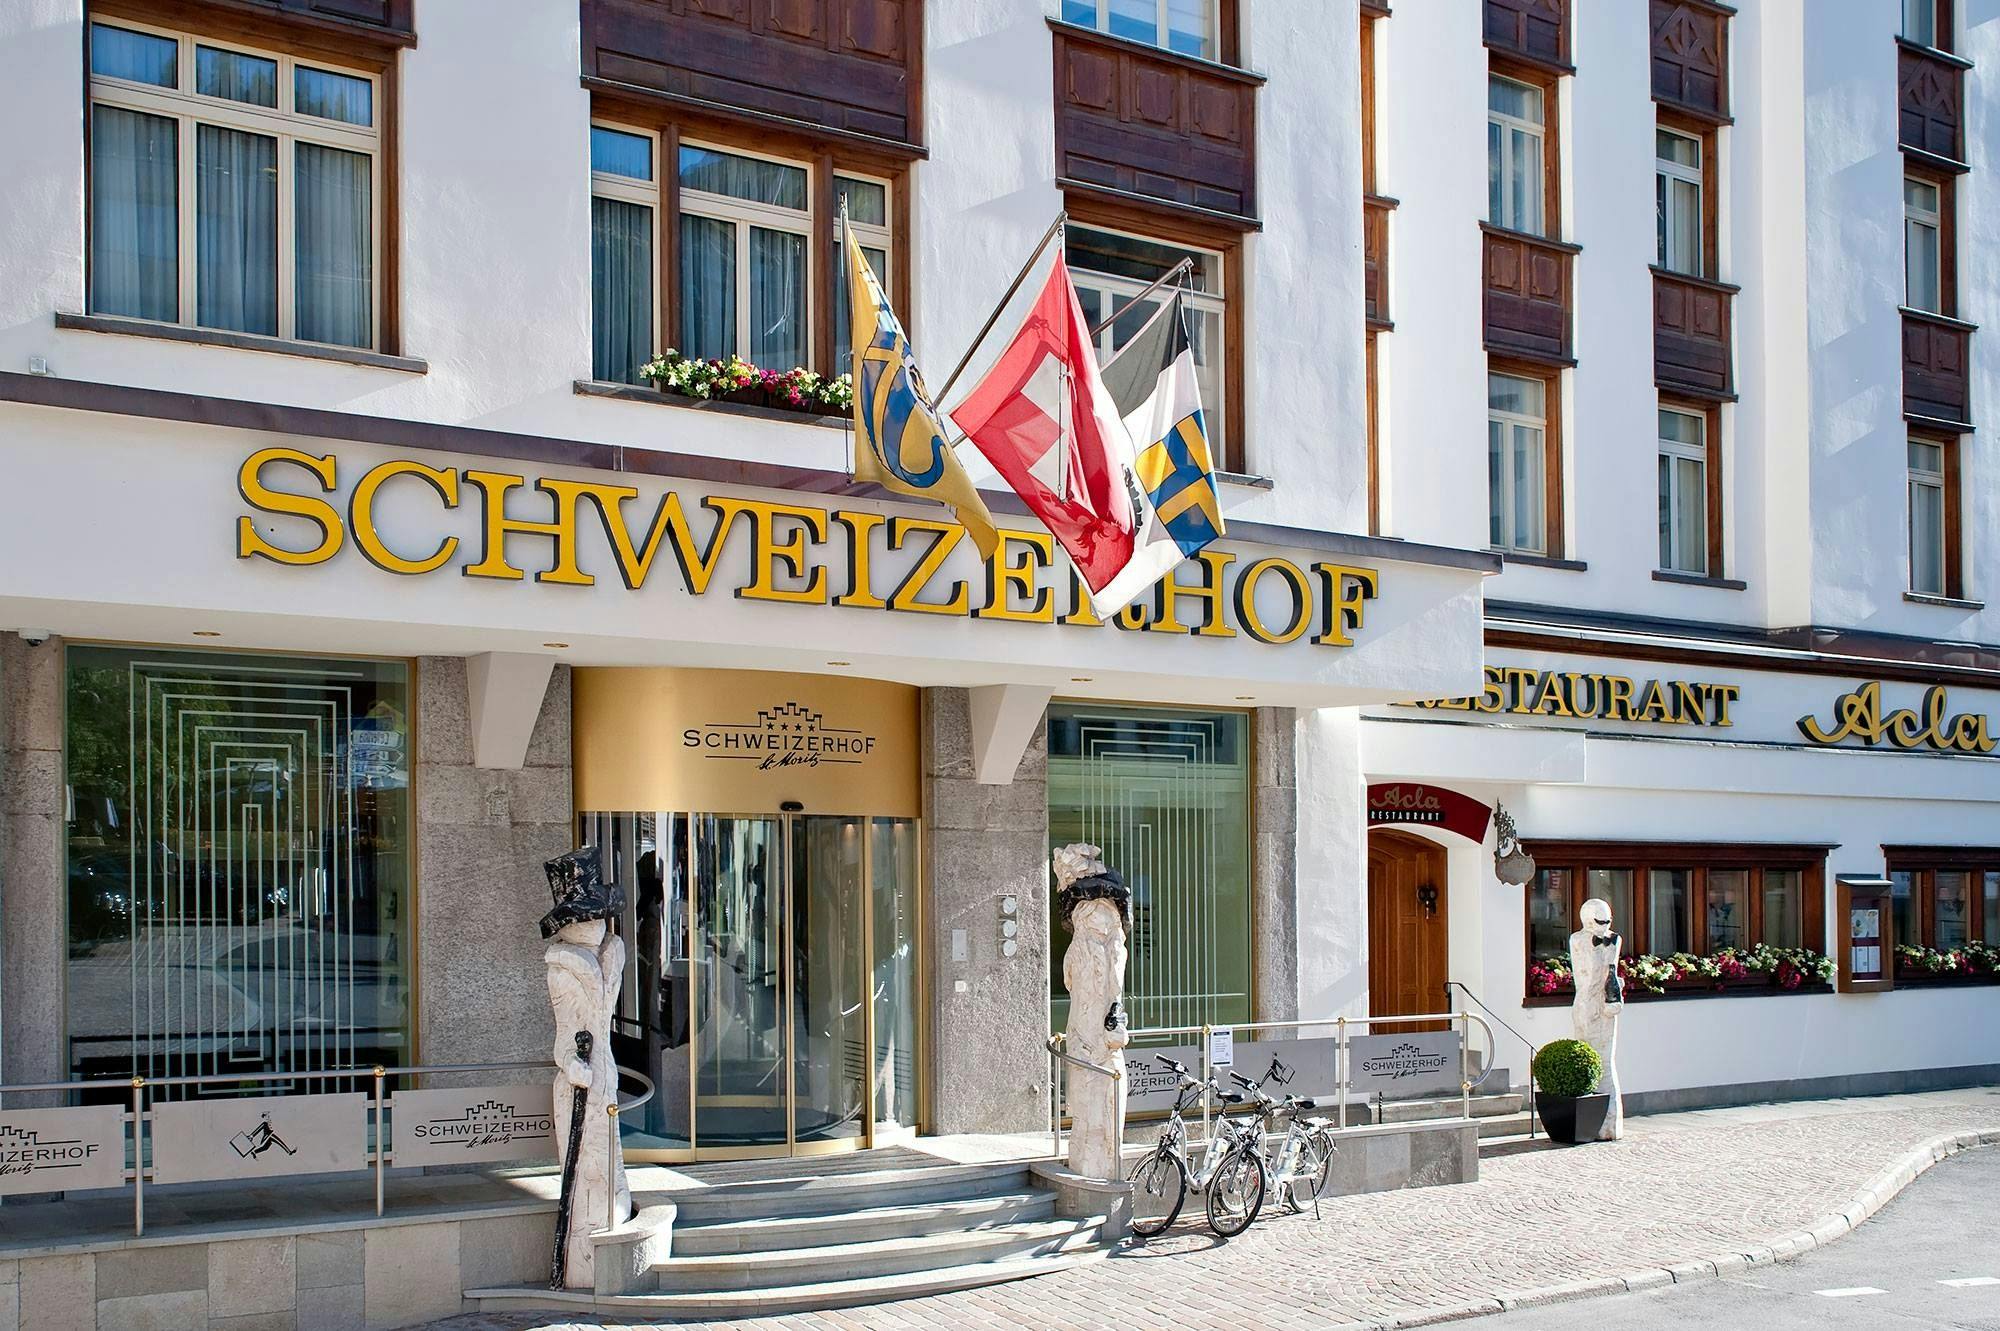 Schweizerhof Swiss Quality Hotel - St. Moritz, Switzerland